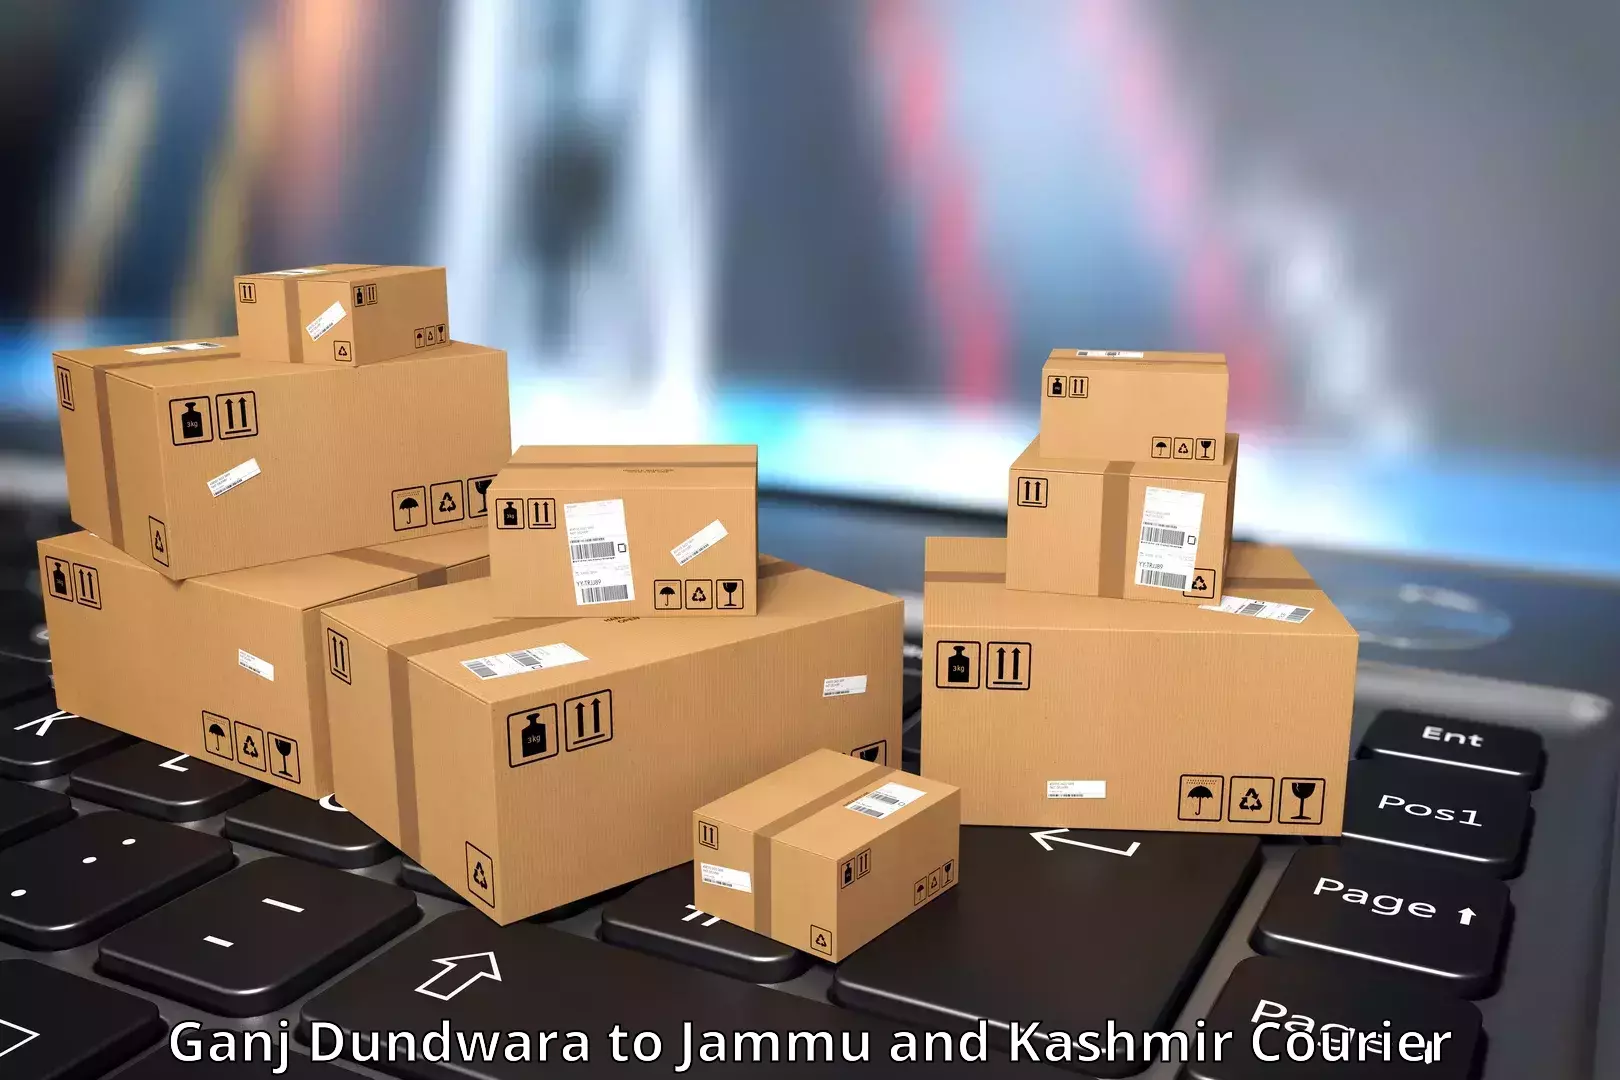 Urgent courier needs Ganj Dundwara to Jammu and Kashmir